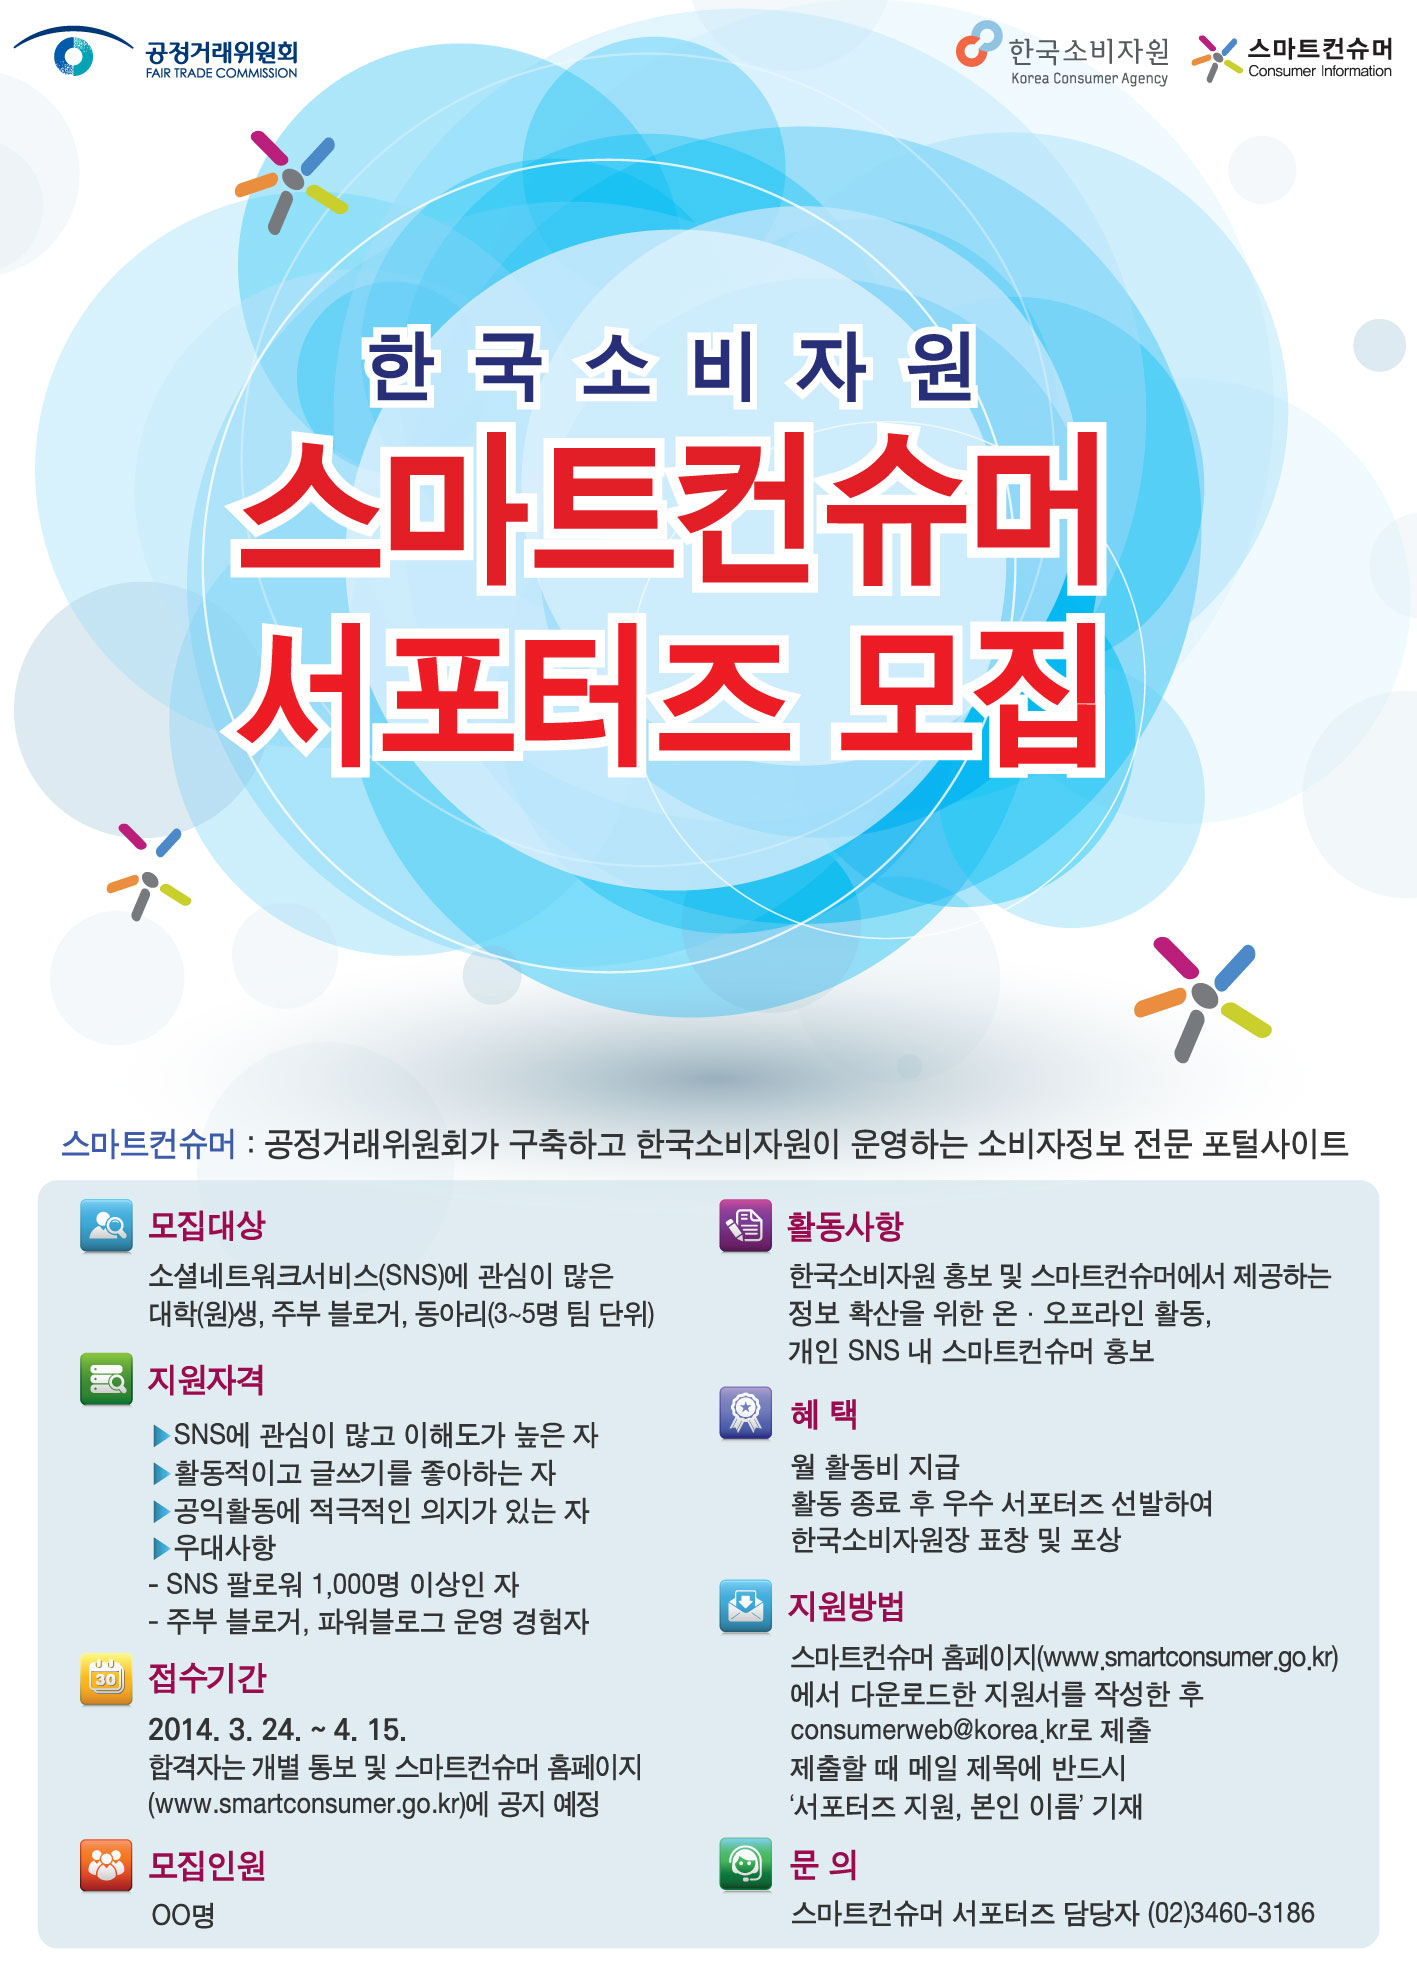 스마트컨슈머:공정거래위원회가 구축하고 한국소비자원이 운영하는 소비자정보 전문 포털사이트